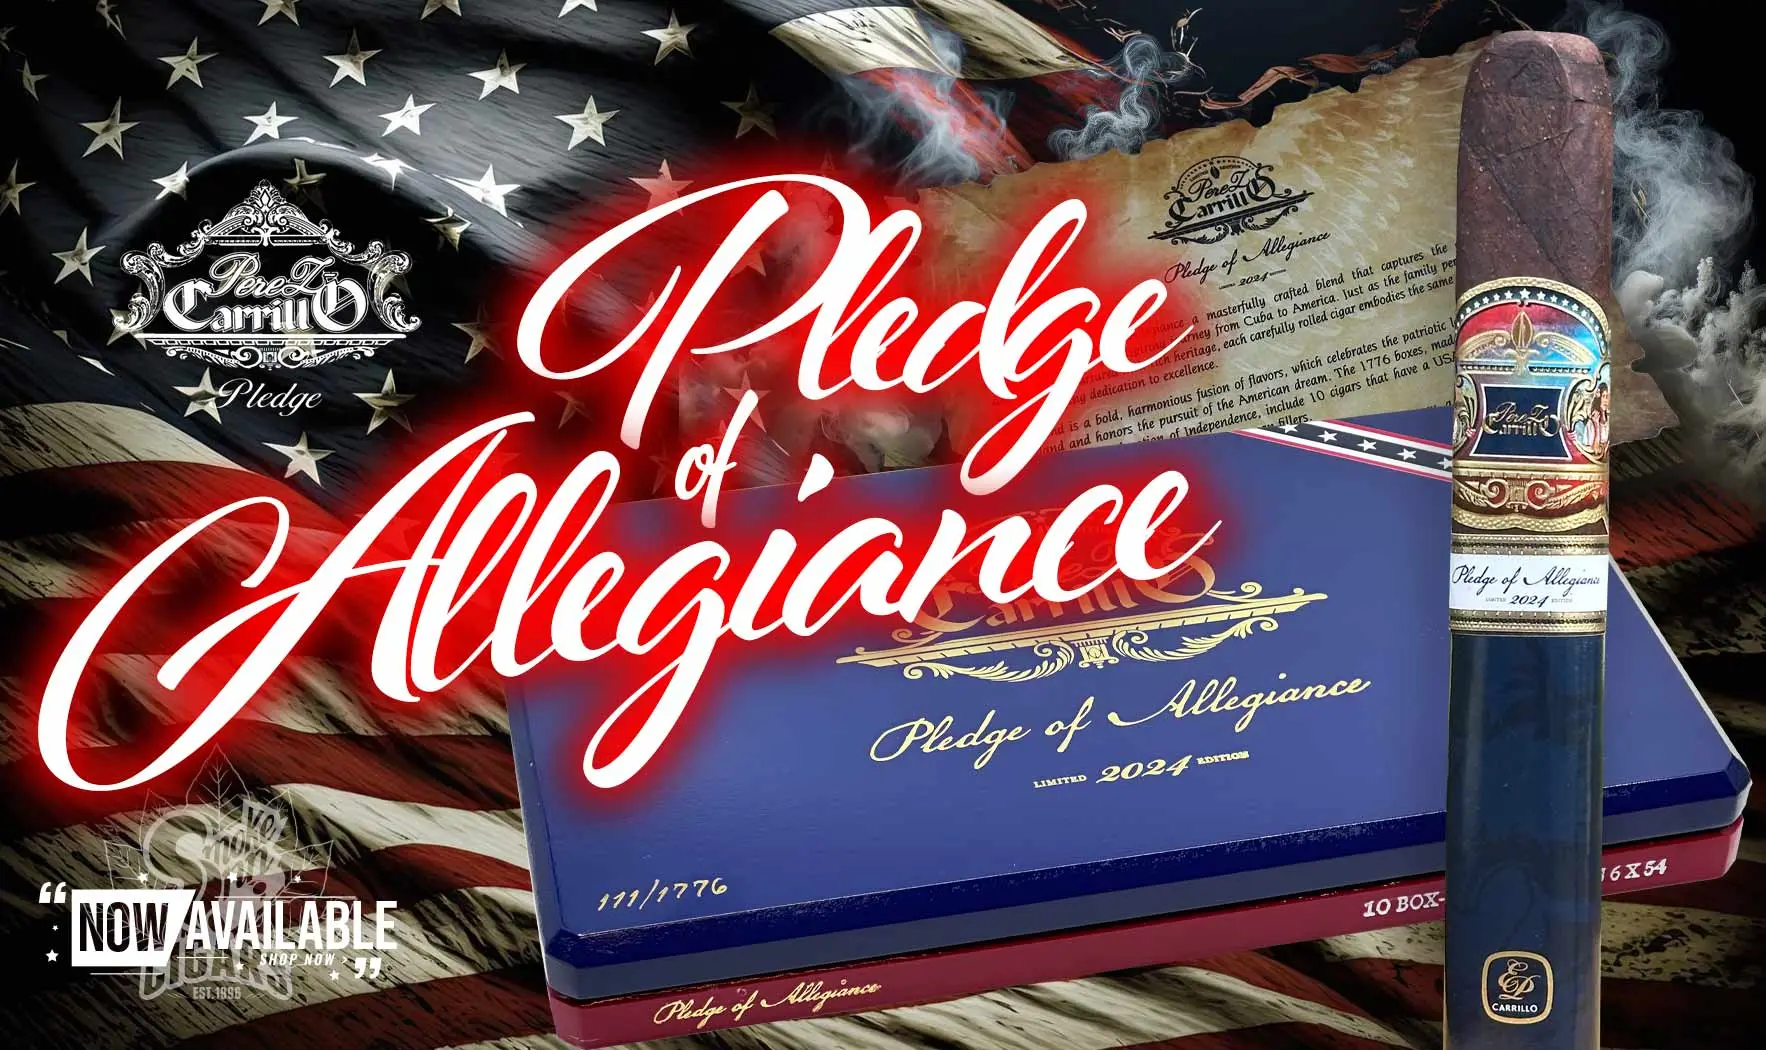 E.P. Carrillo Pledge of Allegiance Limited Edition 2024